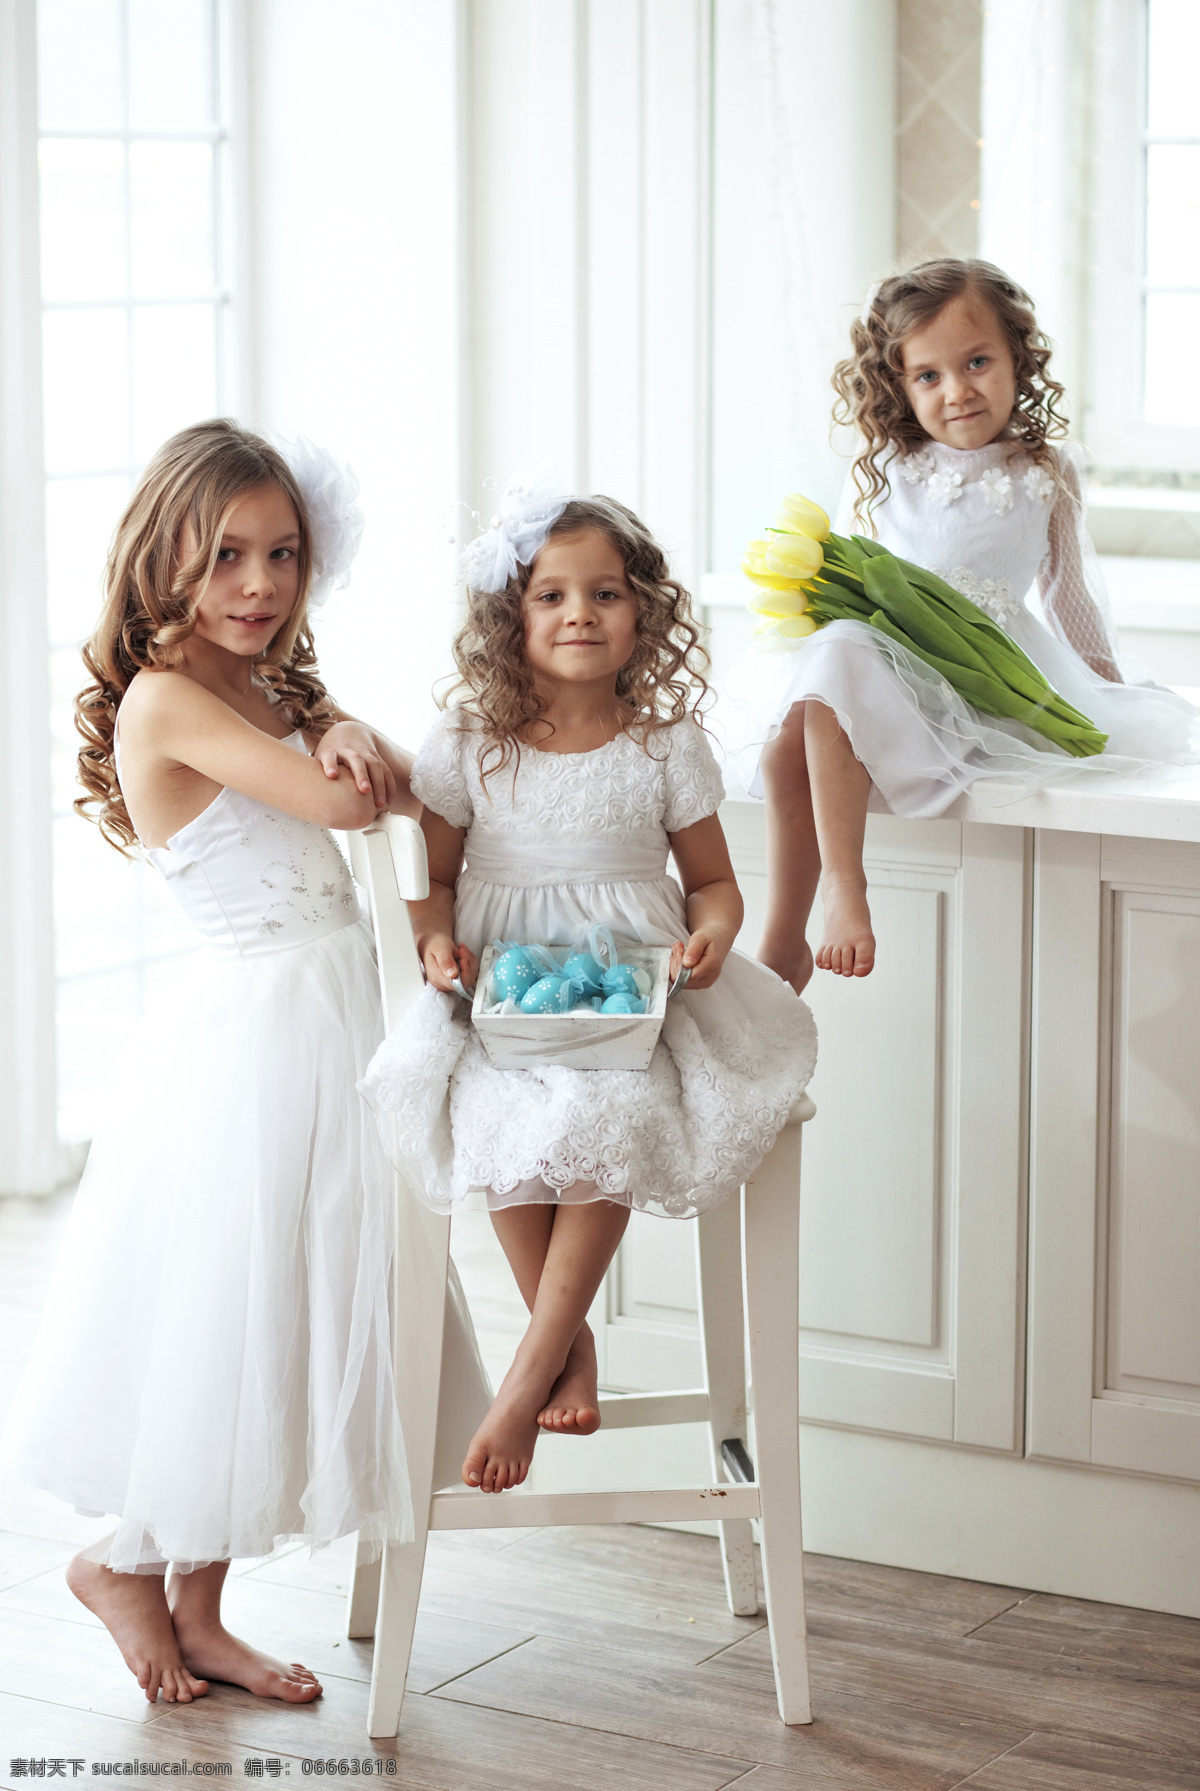 穿 白色 礼服 三个 女孩 外国女孩 穿礼服 可爱 郁金香 儿童摄影 写真 儿童图片 人物图片